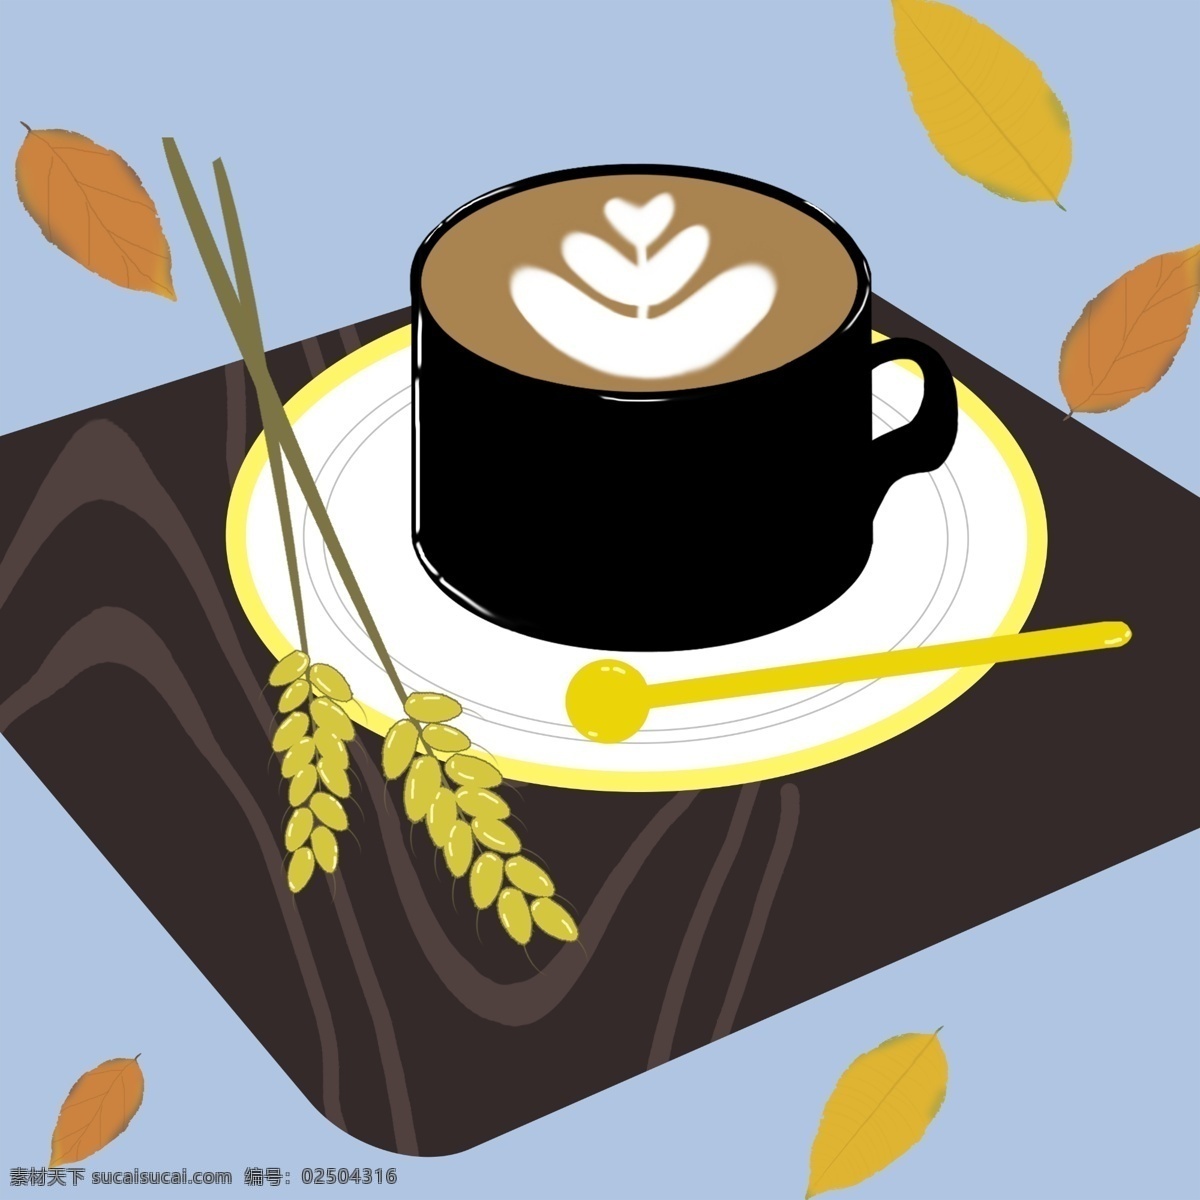 咖啡图片 卡通 手绘 分层 配图 咖啡 小麦 树叶 秋天 插画 装饰 肌理 300分辨率 商务金融 商业插画